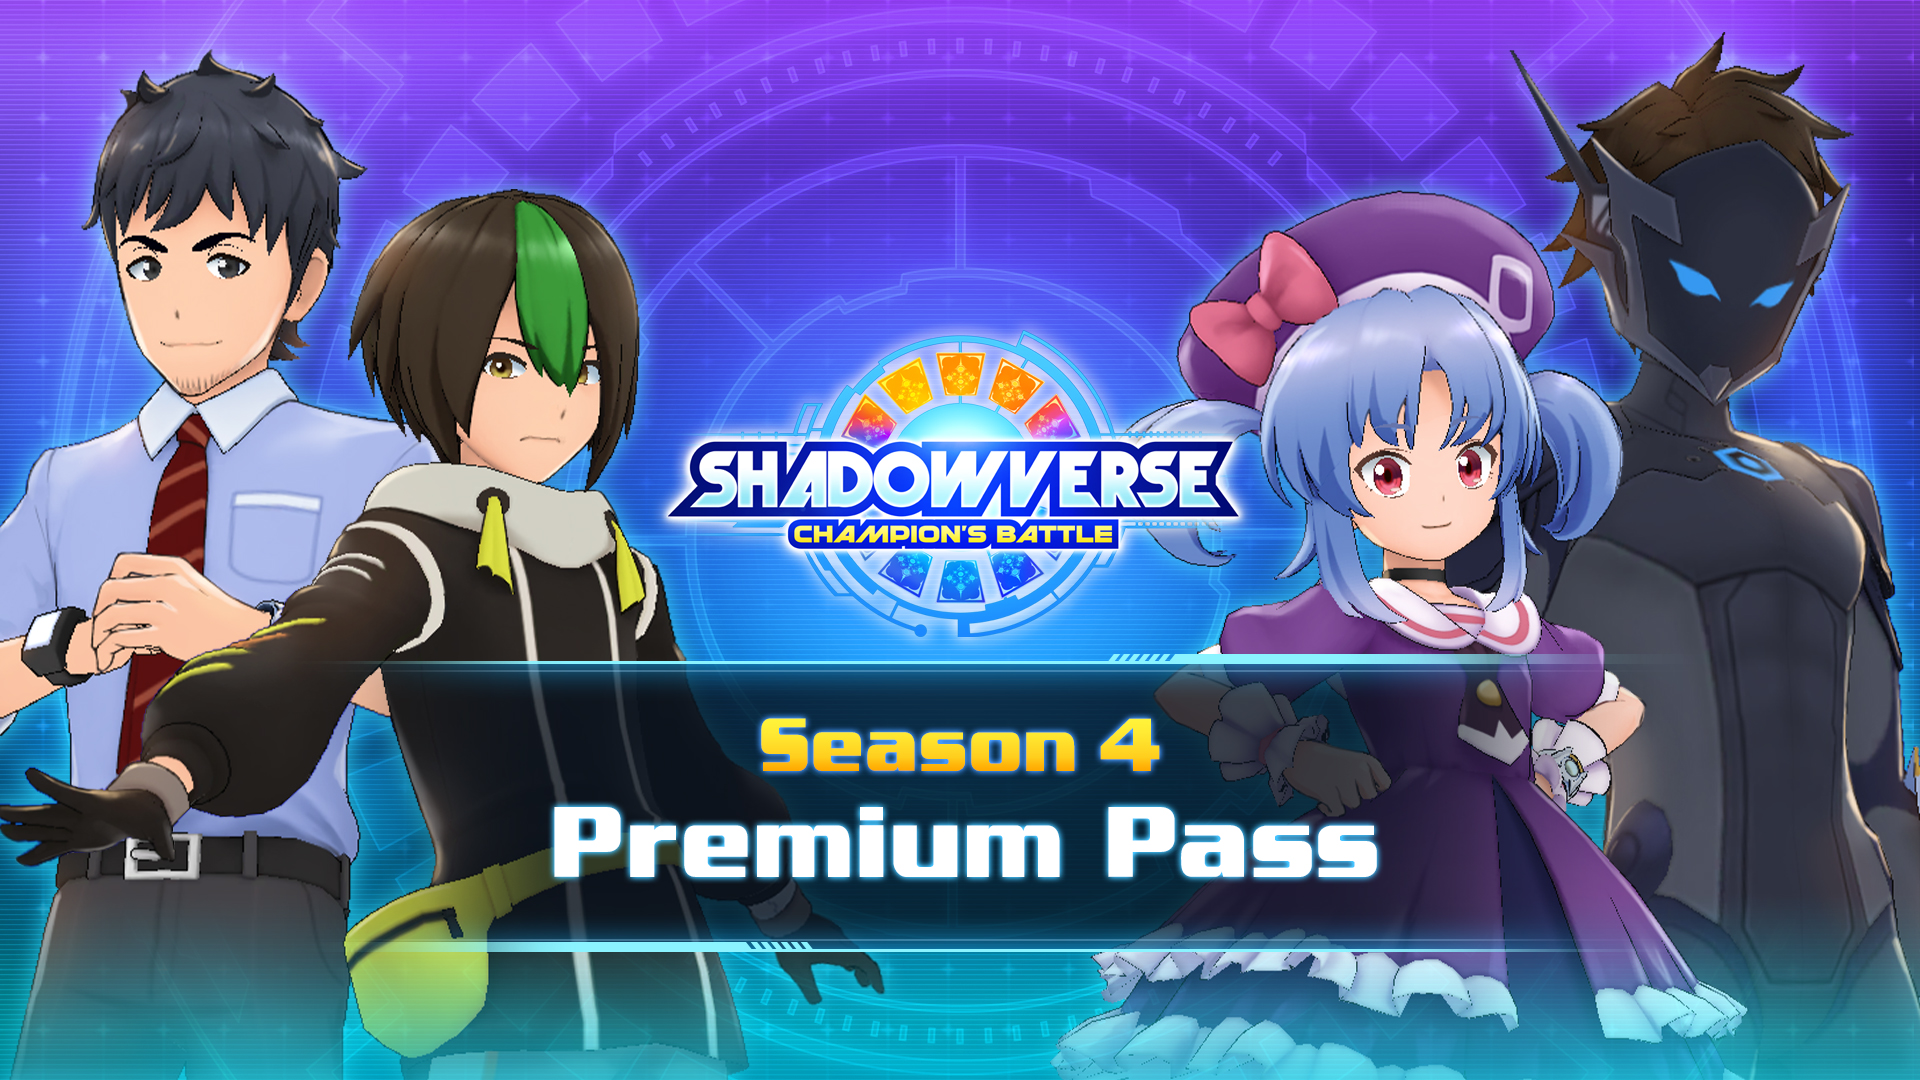 Season 4 Premium Pass